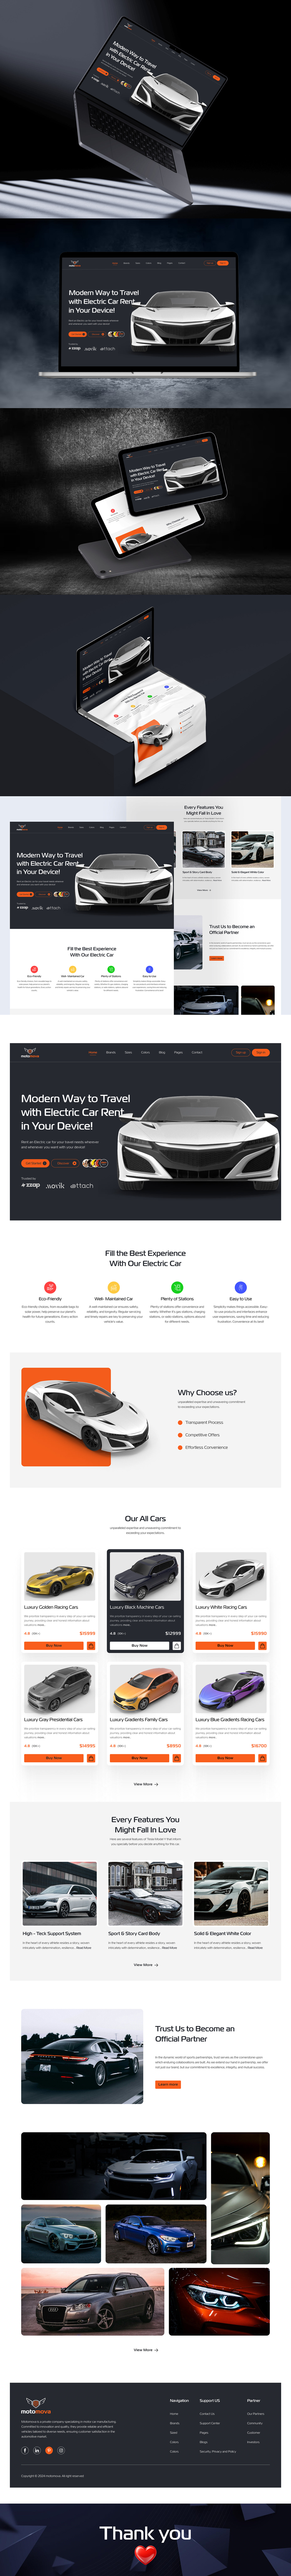 ui design UI/UX landing page design Website Website Design UI designer trend modern